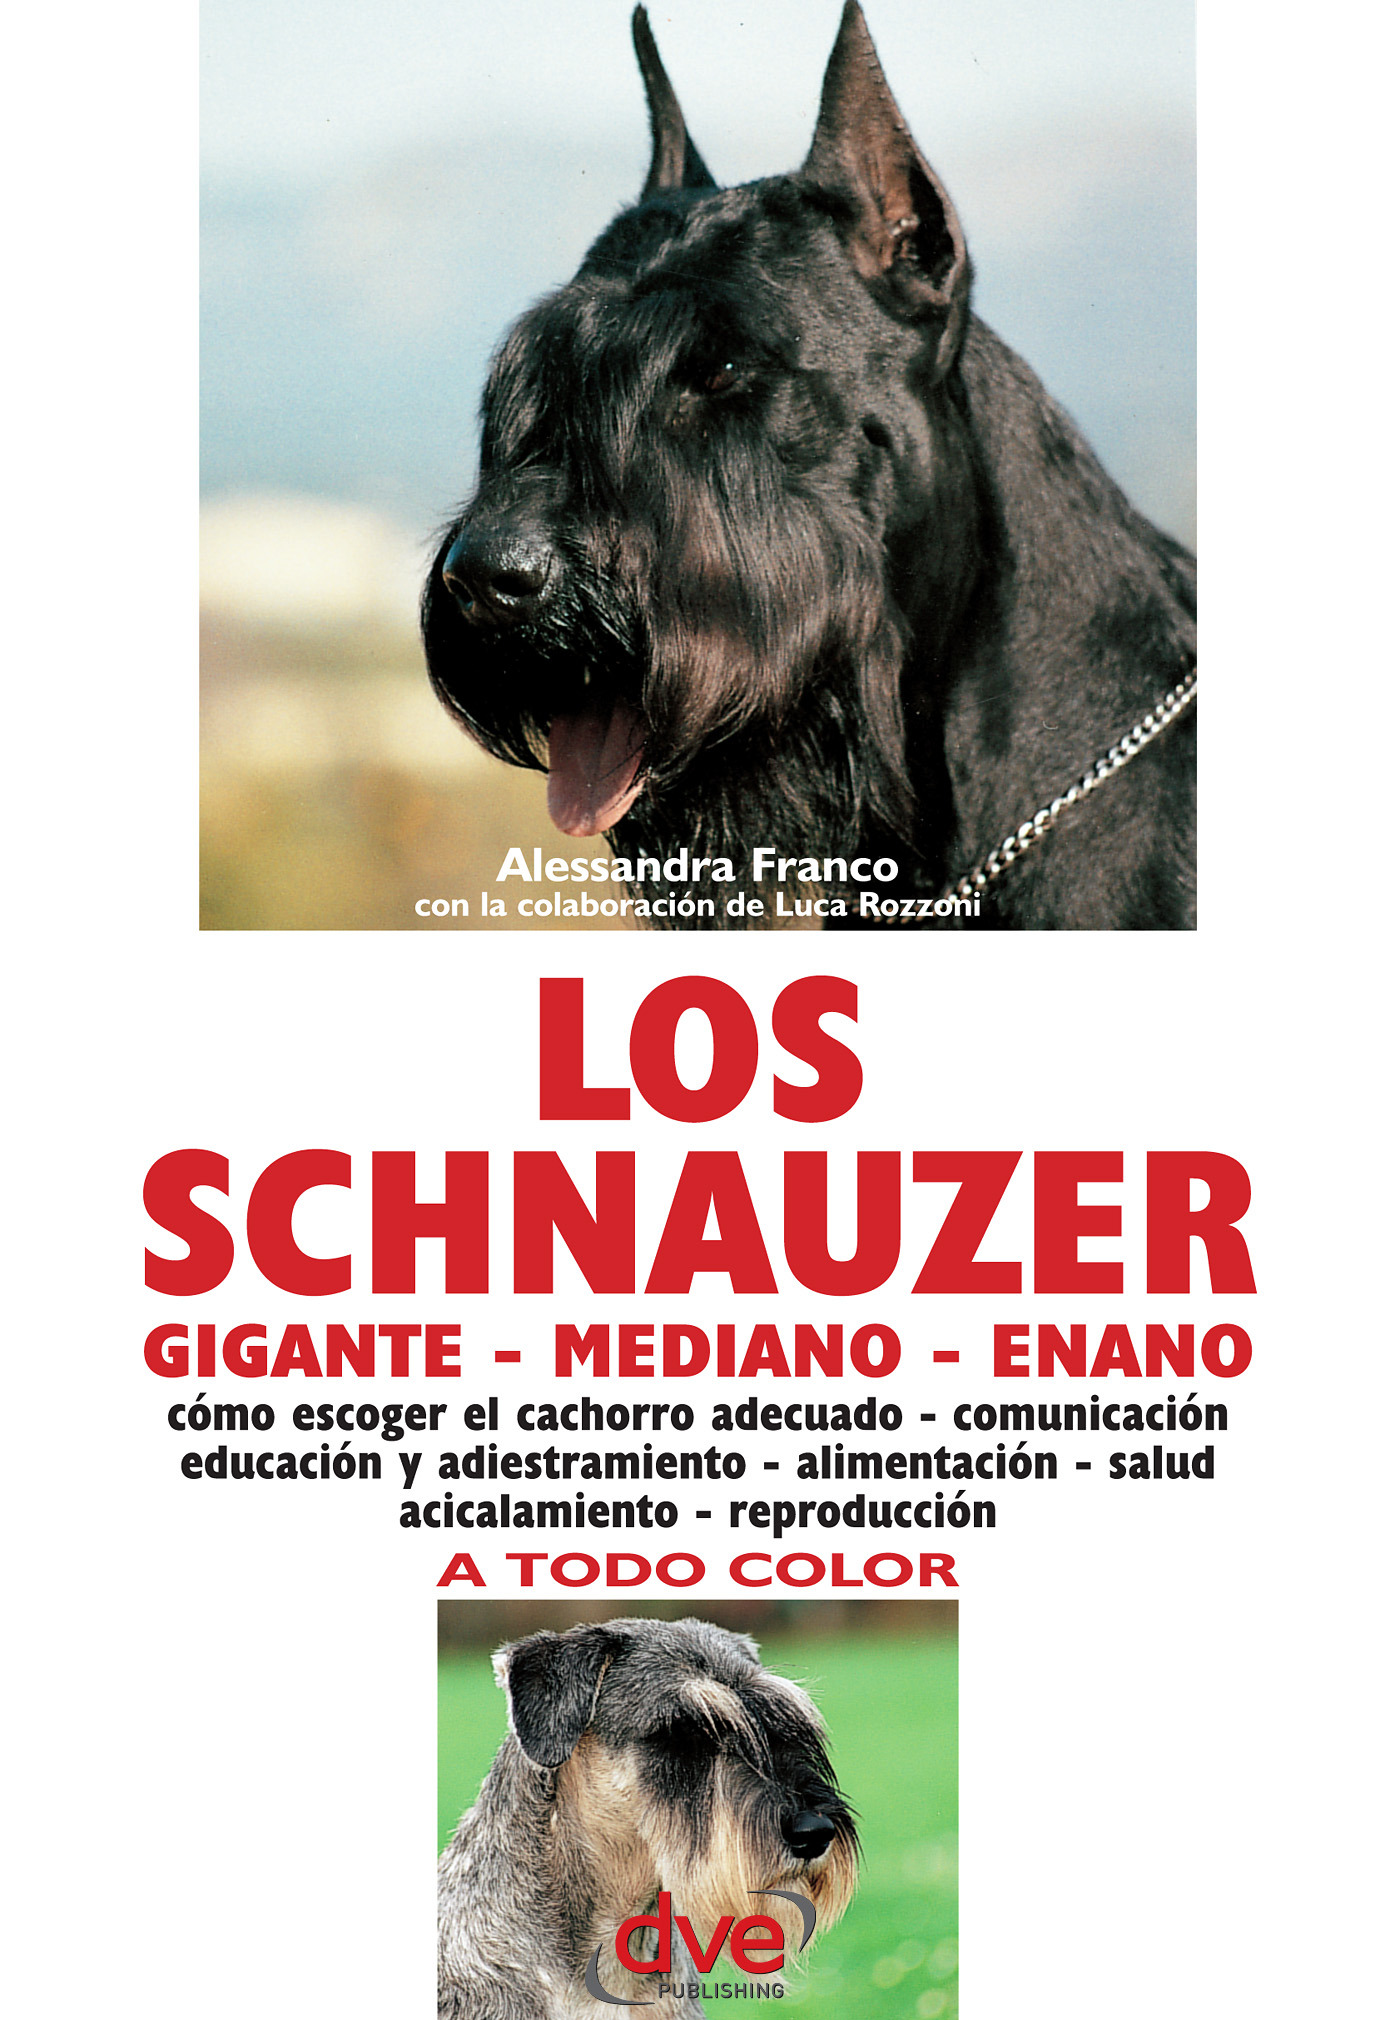 Franco, Alessandra - Los schnauzer: cómo escoger el cachorro adecuado - comunicación educación y adiestramiento - alimentación - salud acicalamiento - reproducción, e-kirja